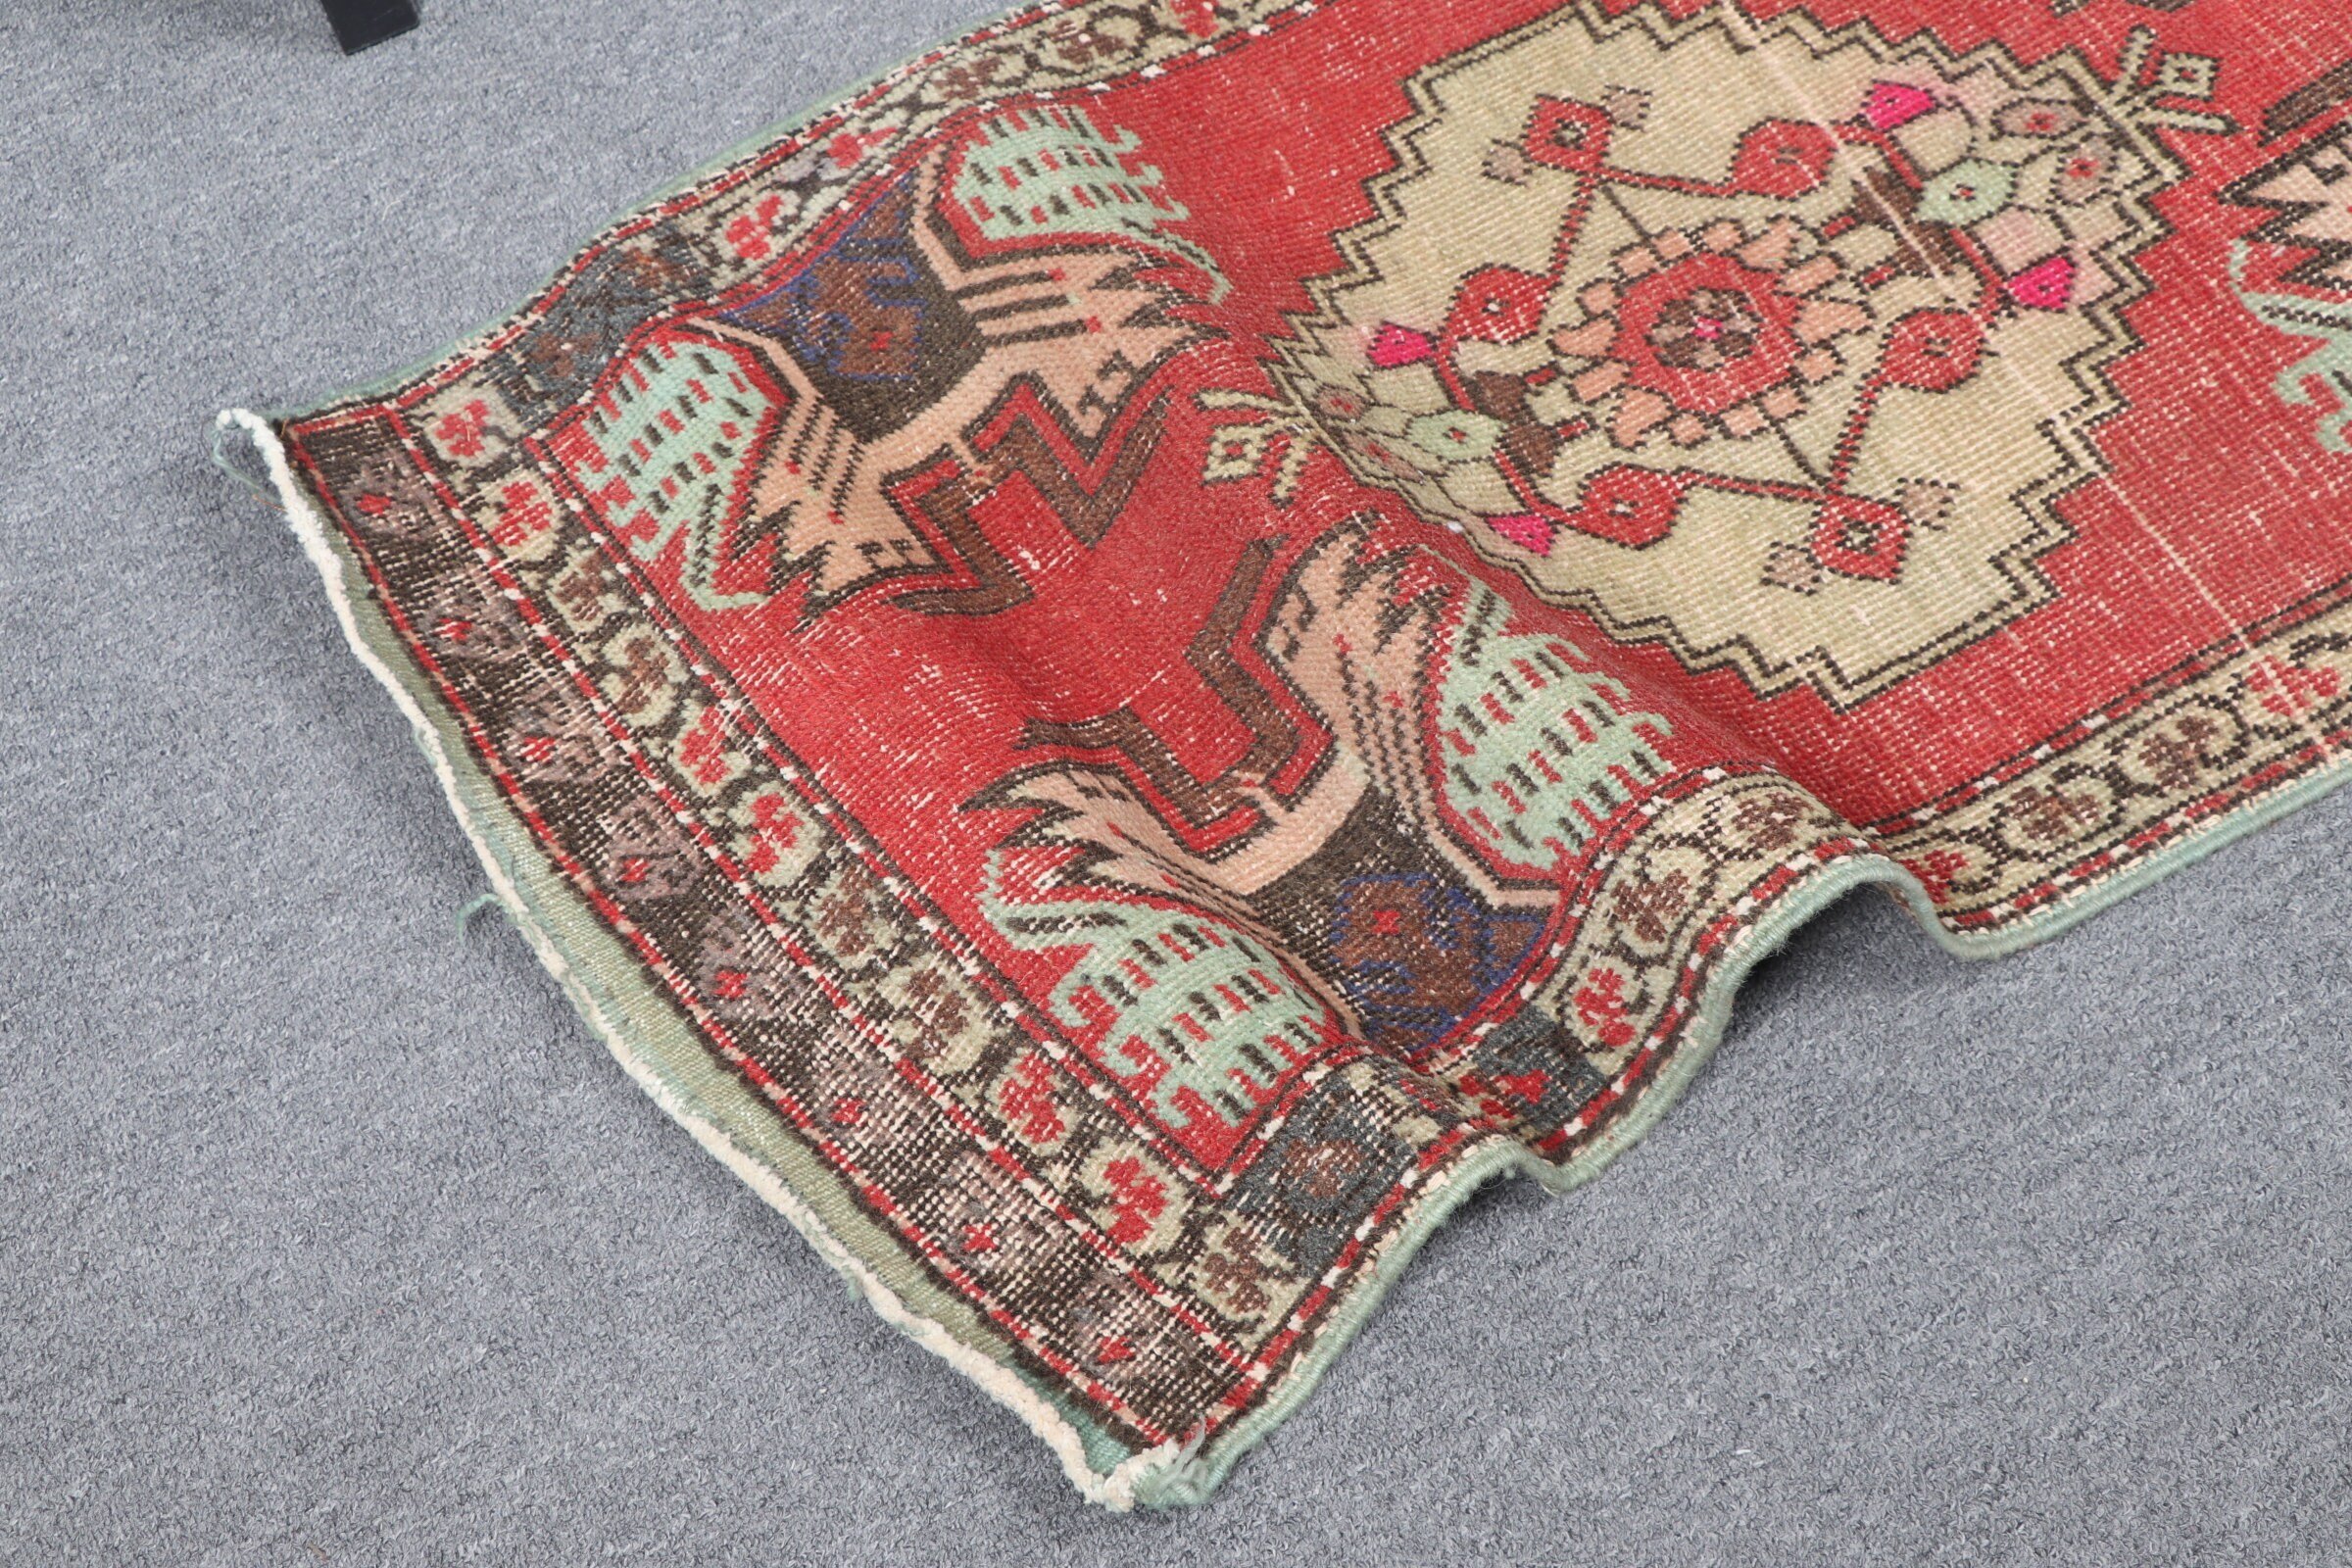 Türk Halısı, Vintage Halı, Oushak Halıları, Kırmızı 1.7x3.3 ft Küçük Halılar, Kapı Paspası Halısı, Giriş Halıları, Kapı Paspası Halıları